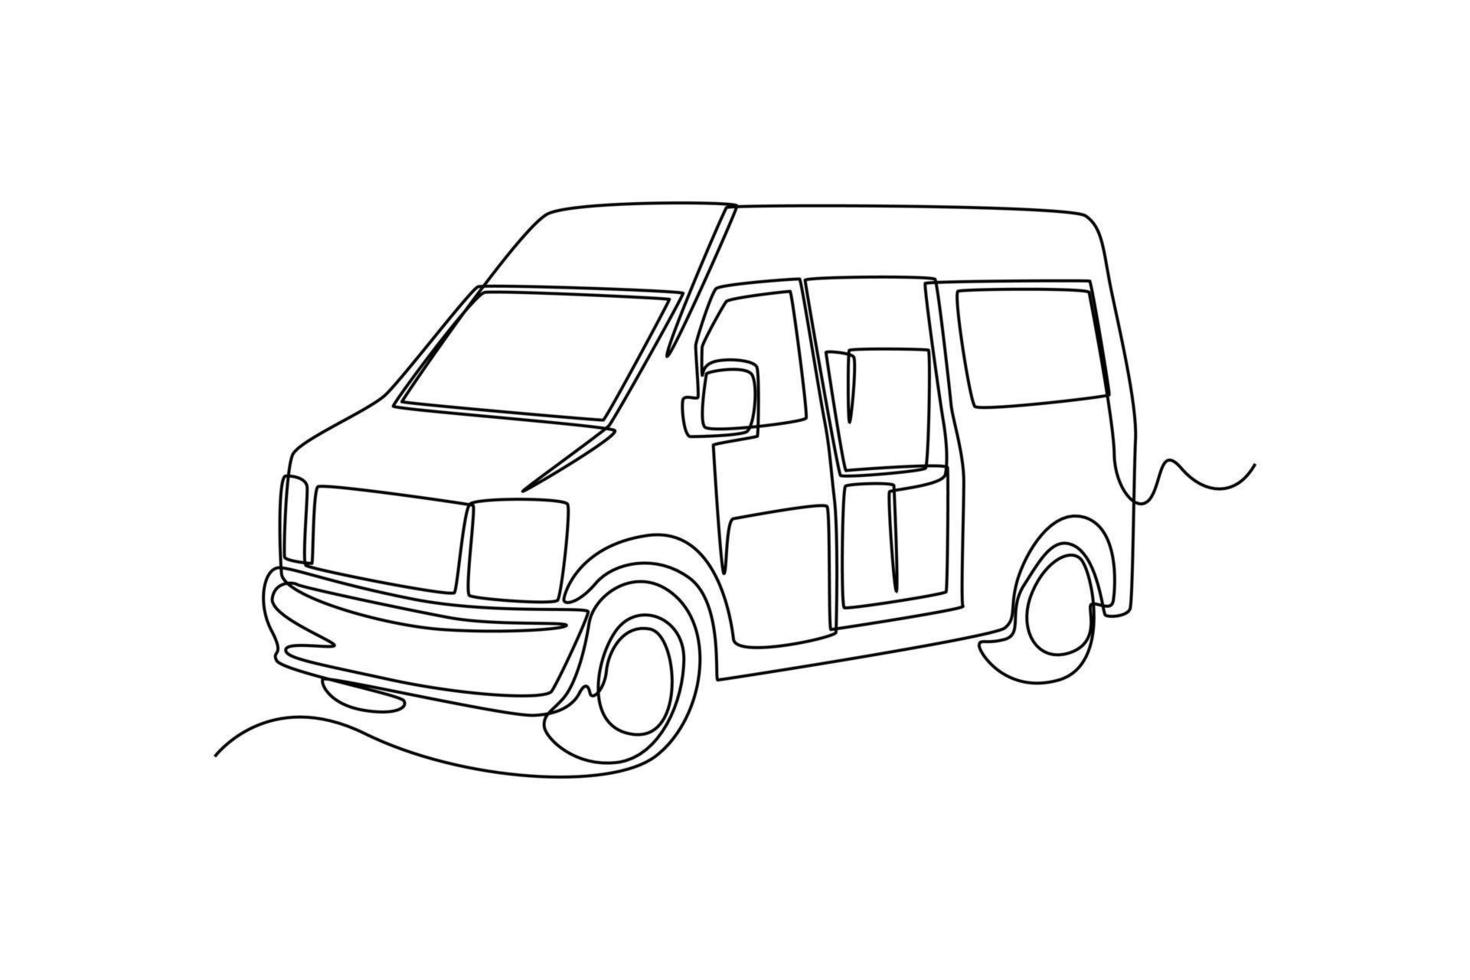 camionnette de livraison continue à dessin en ligne allant au port avec des caisses de fret. notion de fret. illustration graphique vectorielle de dessin à une seule ligne. vecteur